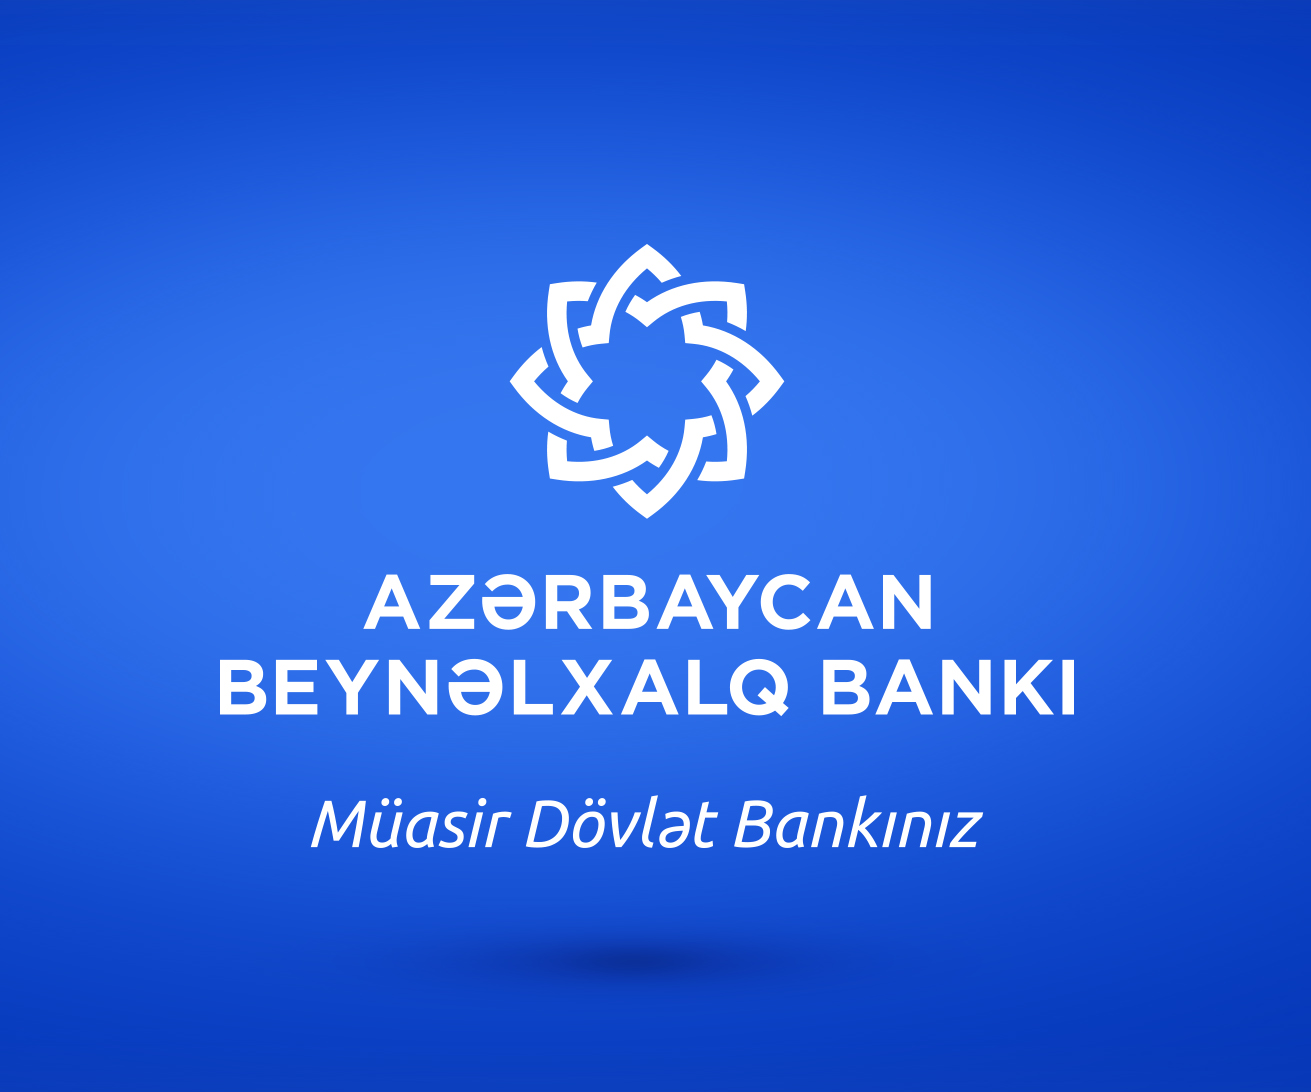 Moody's Azərbaycan Beynəlxalq Bankının  reytinq proqnozunu stabil qiymətləndirdi